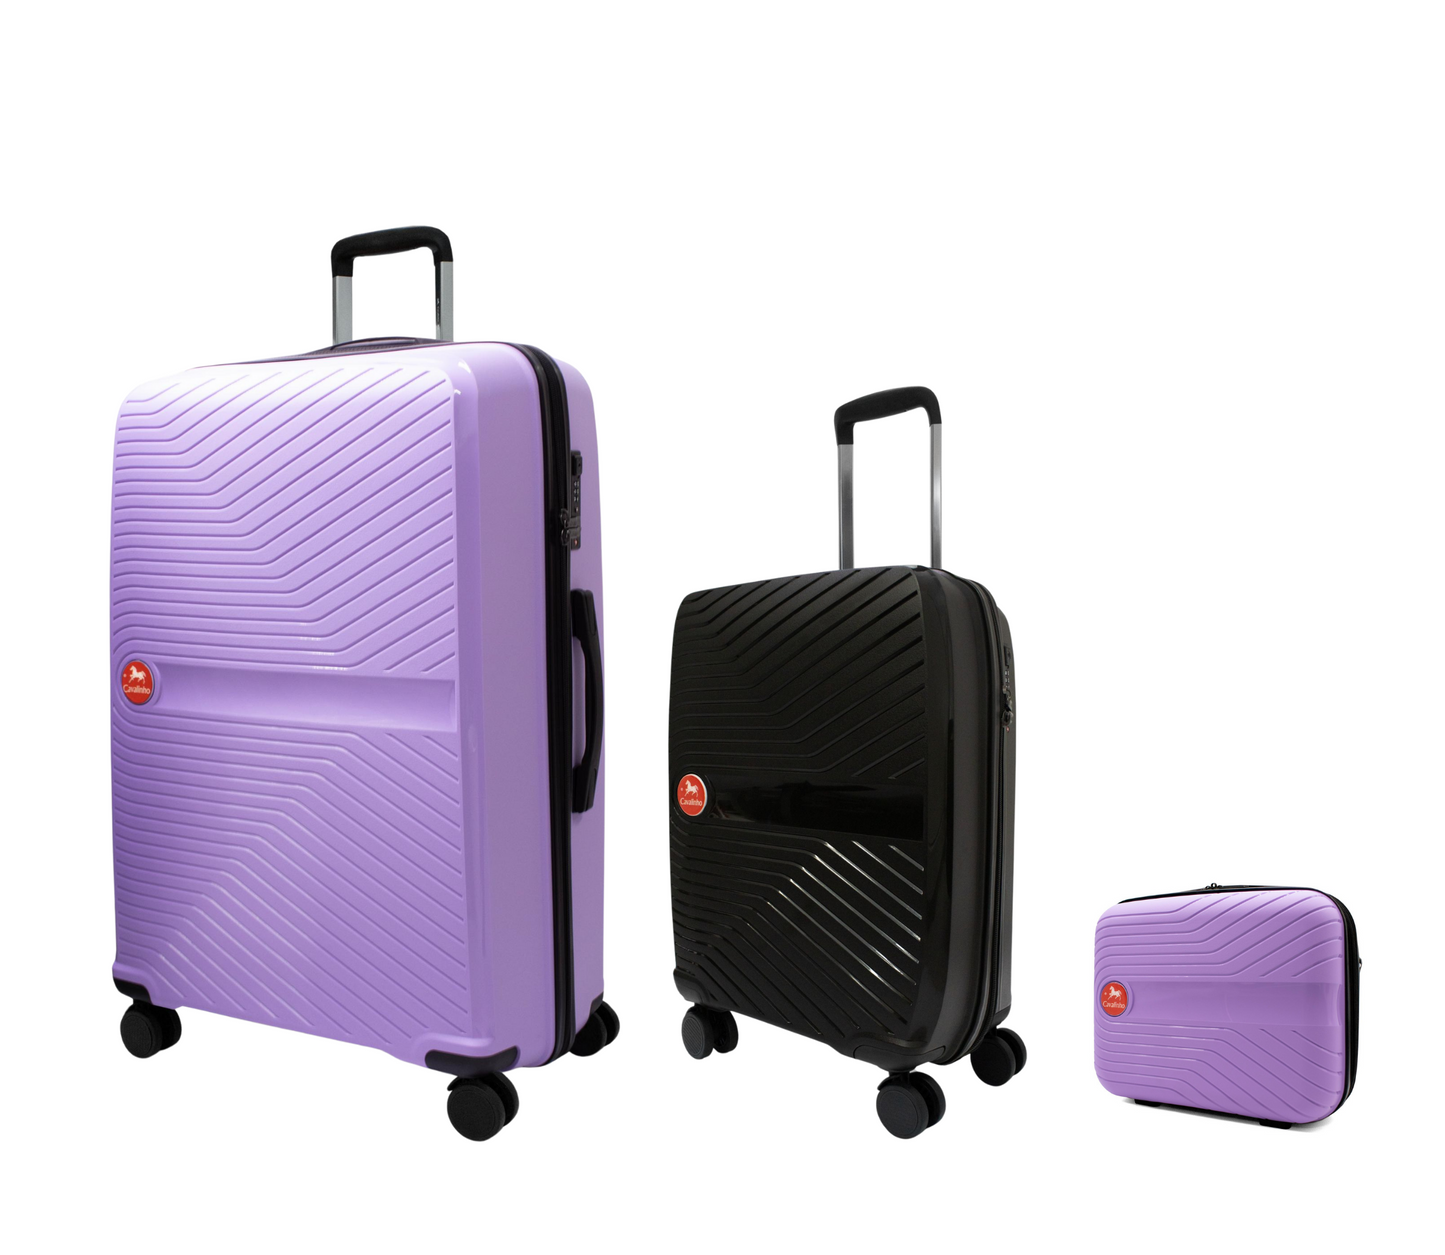 #color_ Lilac Black Lilac | Cavalinho Canada & USA Colorful 3 Piece Luggage Set (15", 19" & 28") - Lilac Black Lilac - 68020004.390139.S151928._2